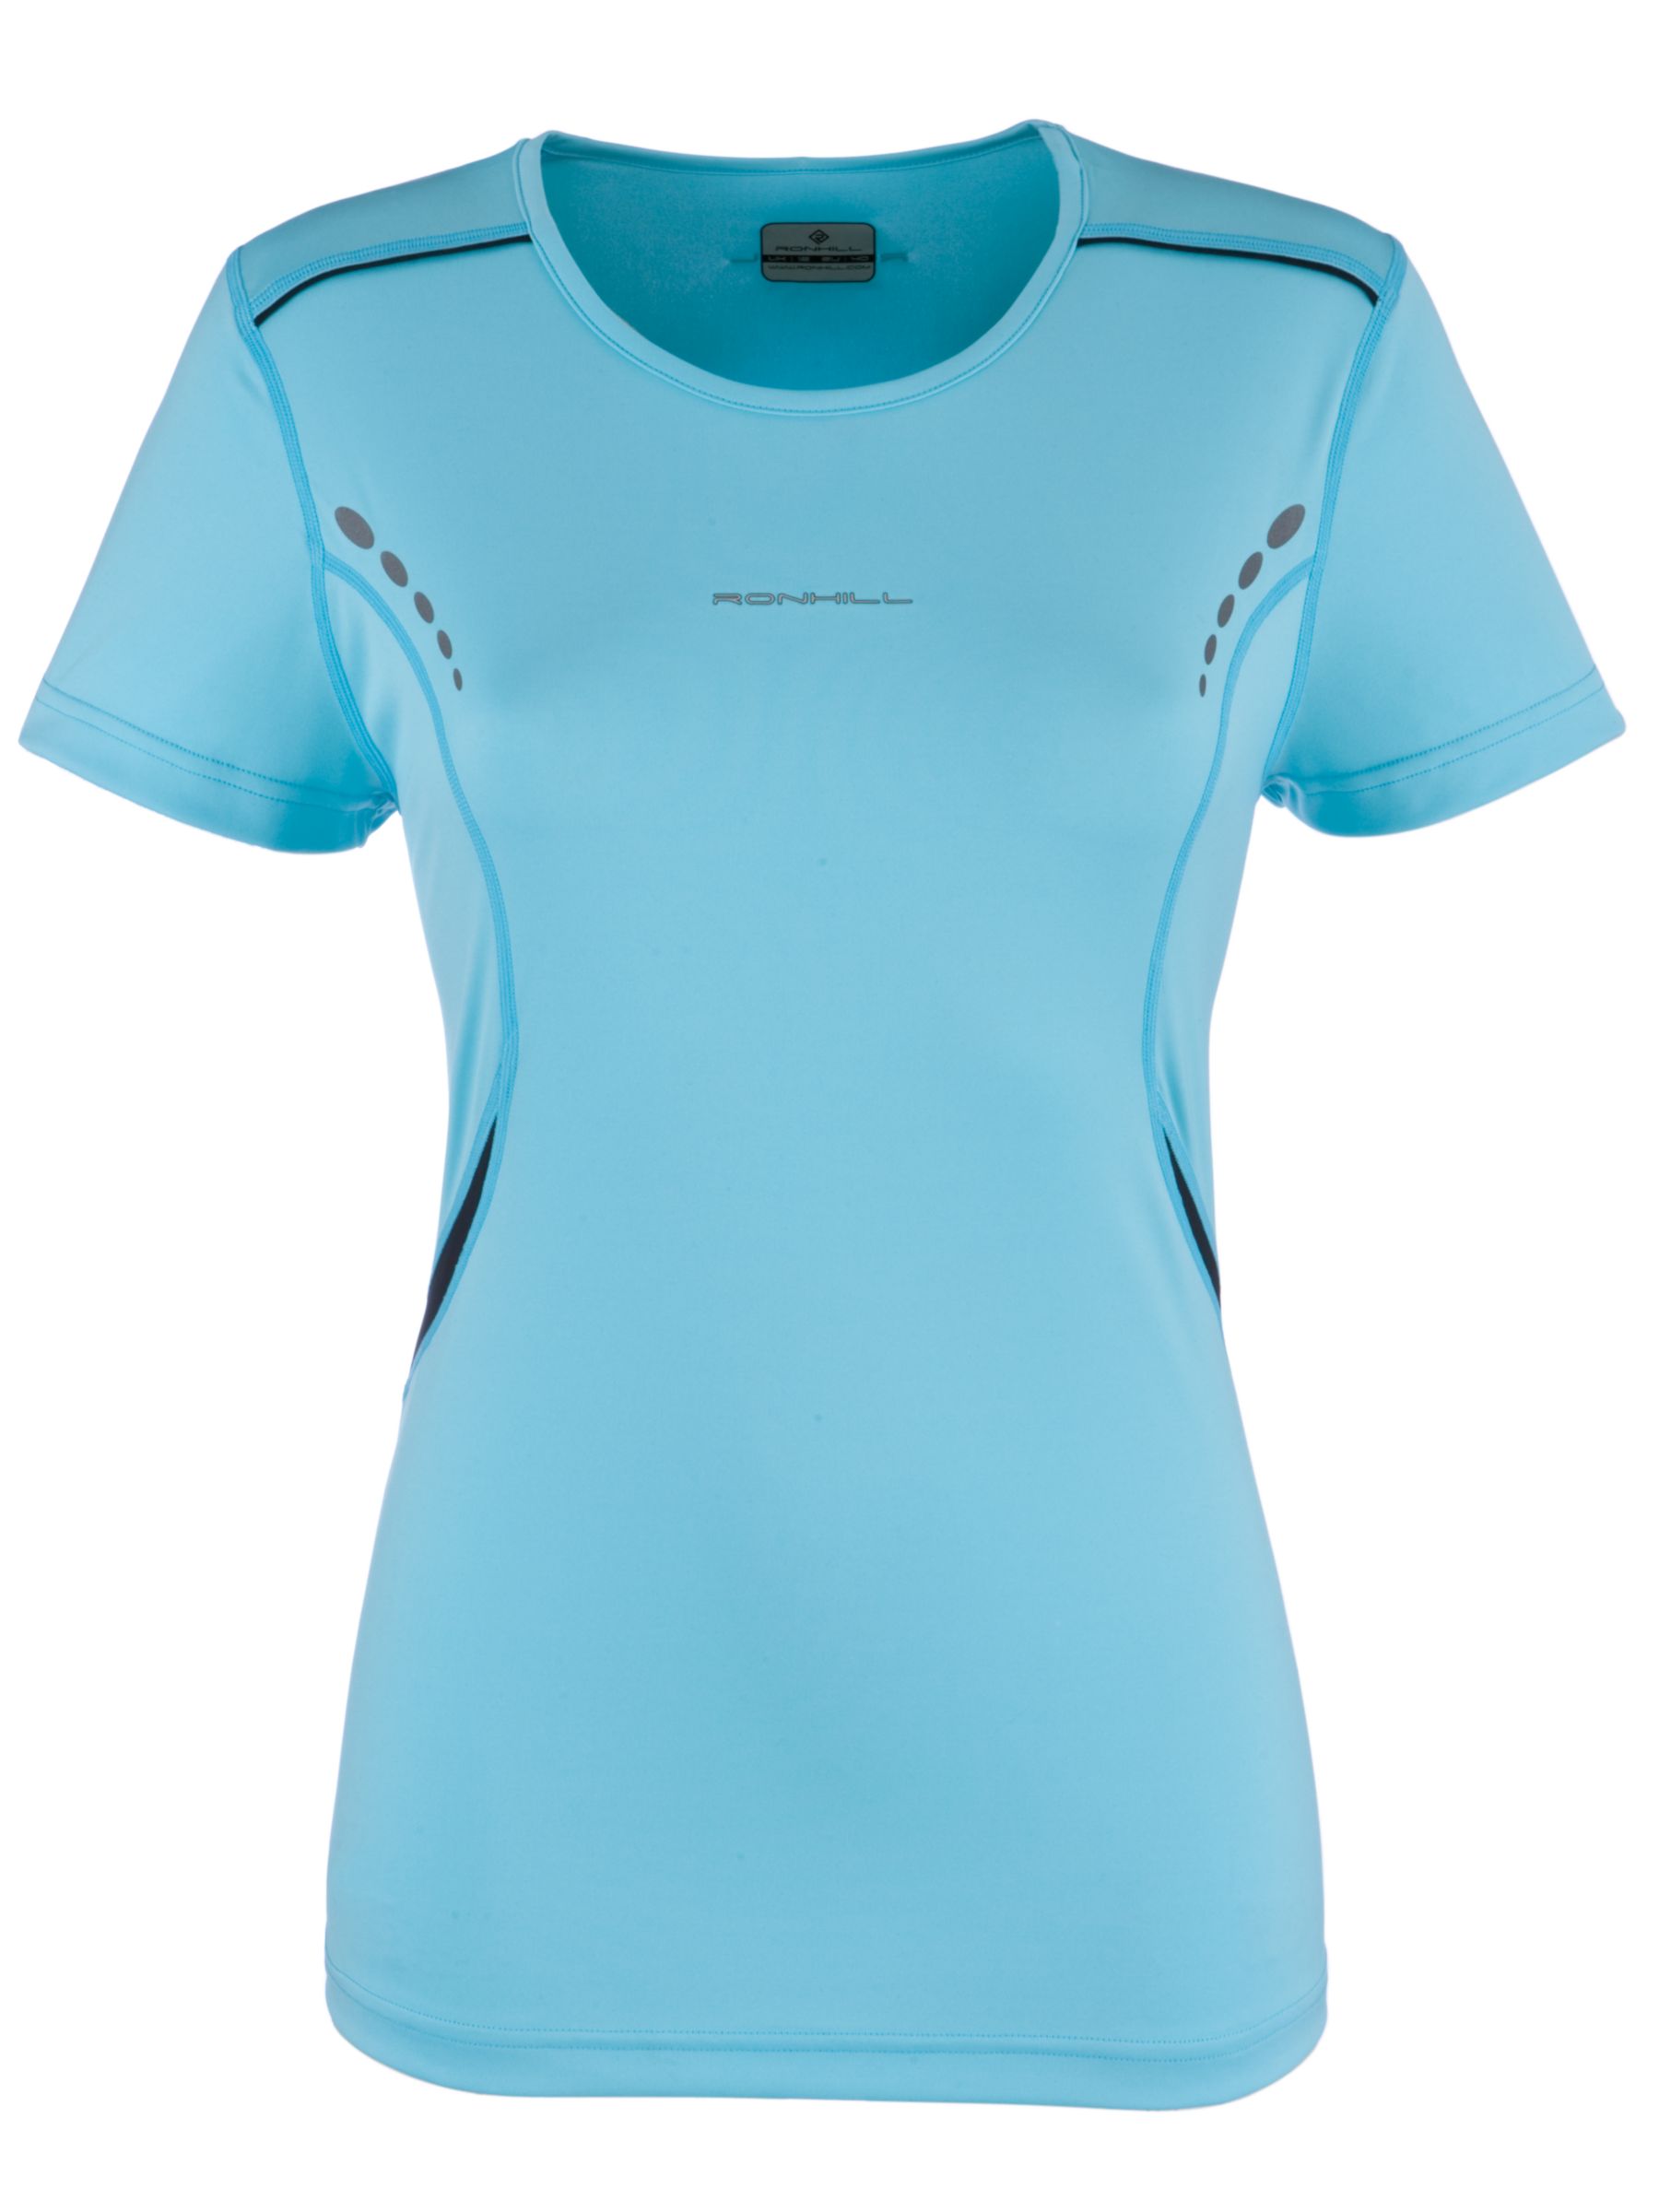 Ronhill Aspiration Short Sleeve T-Shirt, Blue